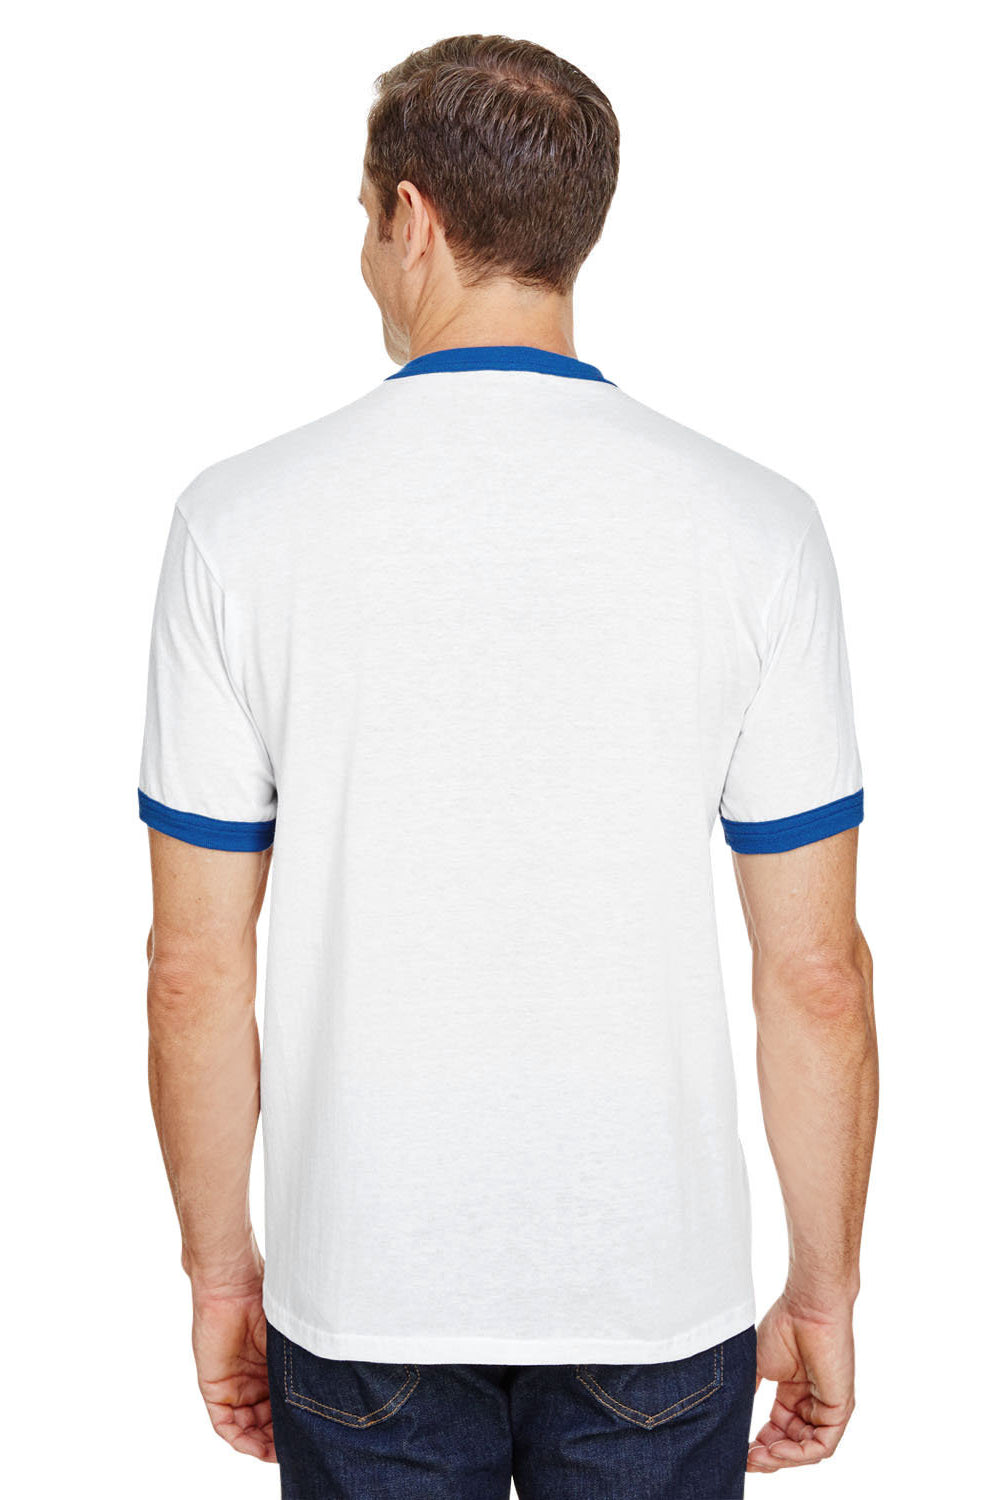 Augusta Sportswear 710 Mens Ringer Short Sleeve Crewneck T-Shirt White/Royal Model Back